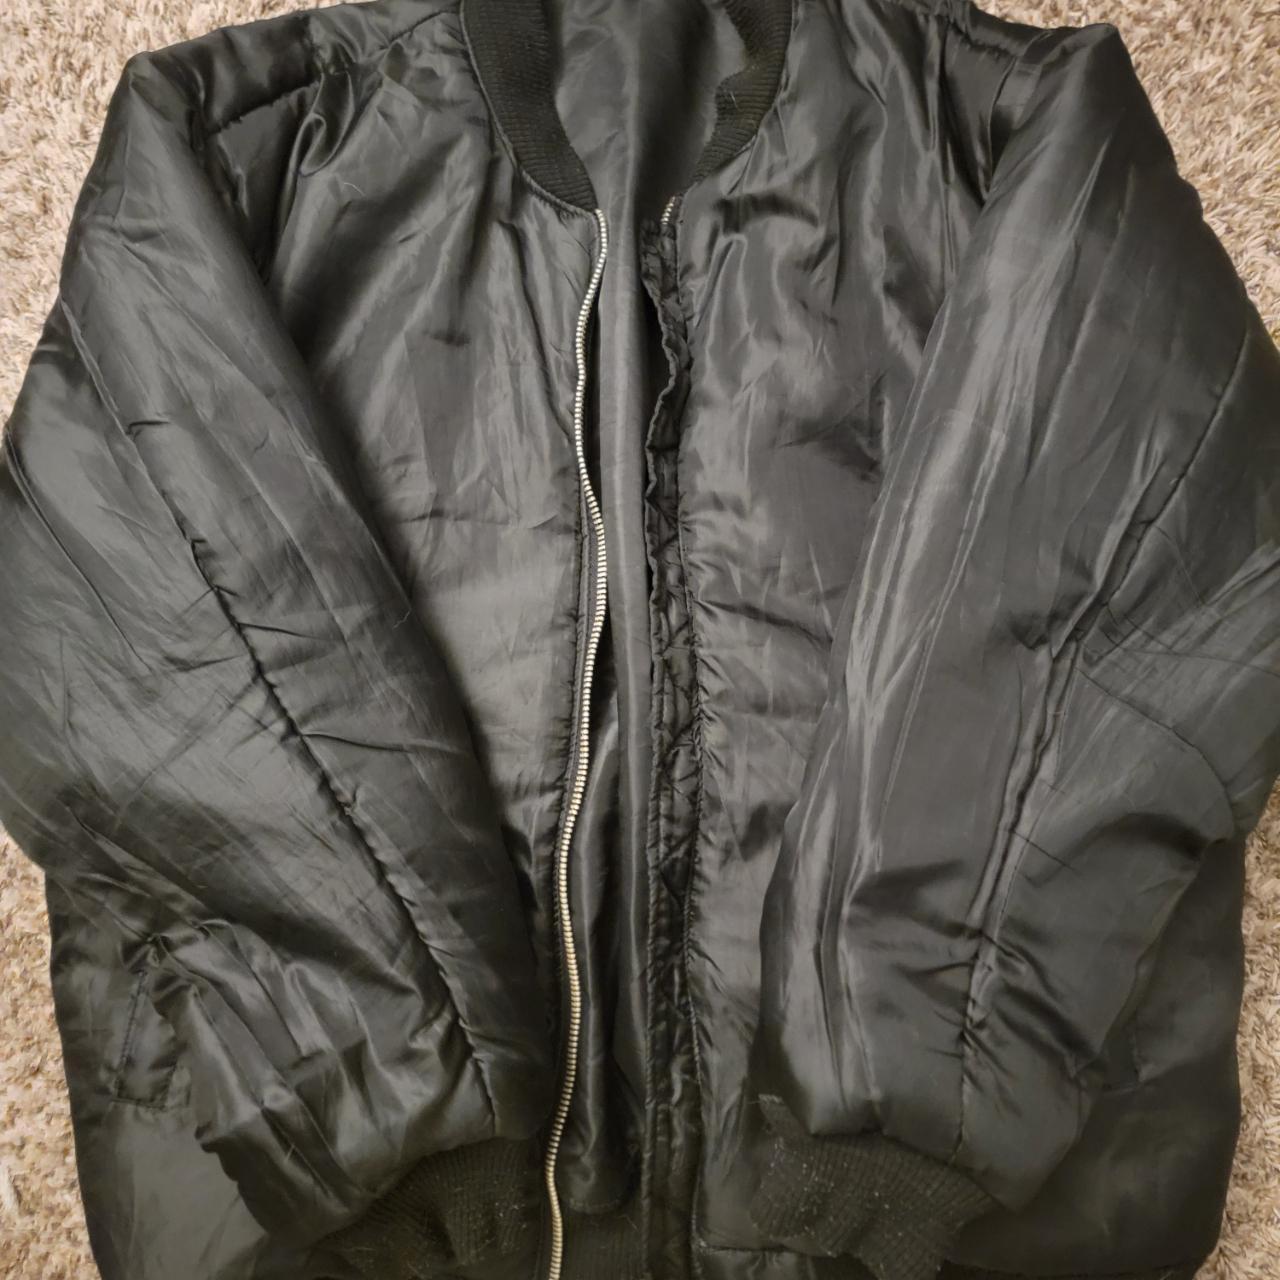 Black bomber jacket xxxl #90s,#y2k - Depop